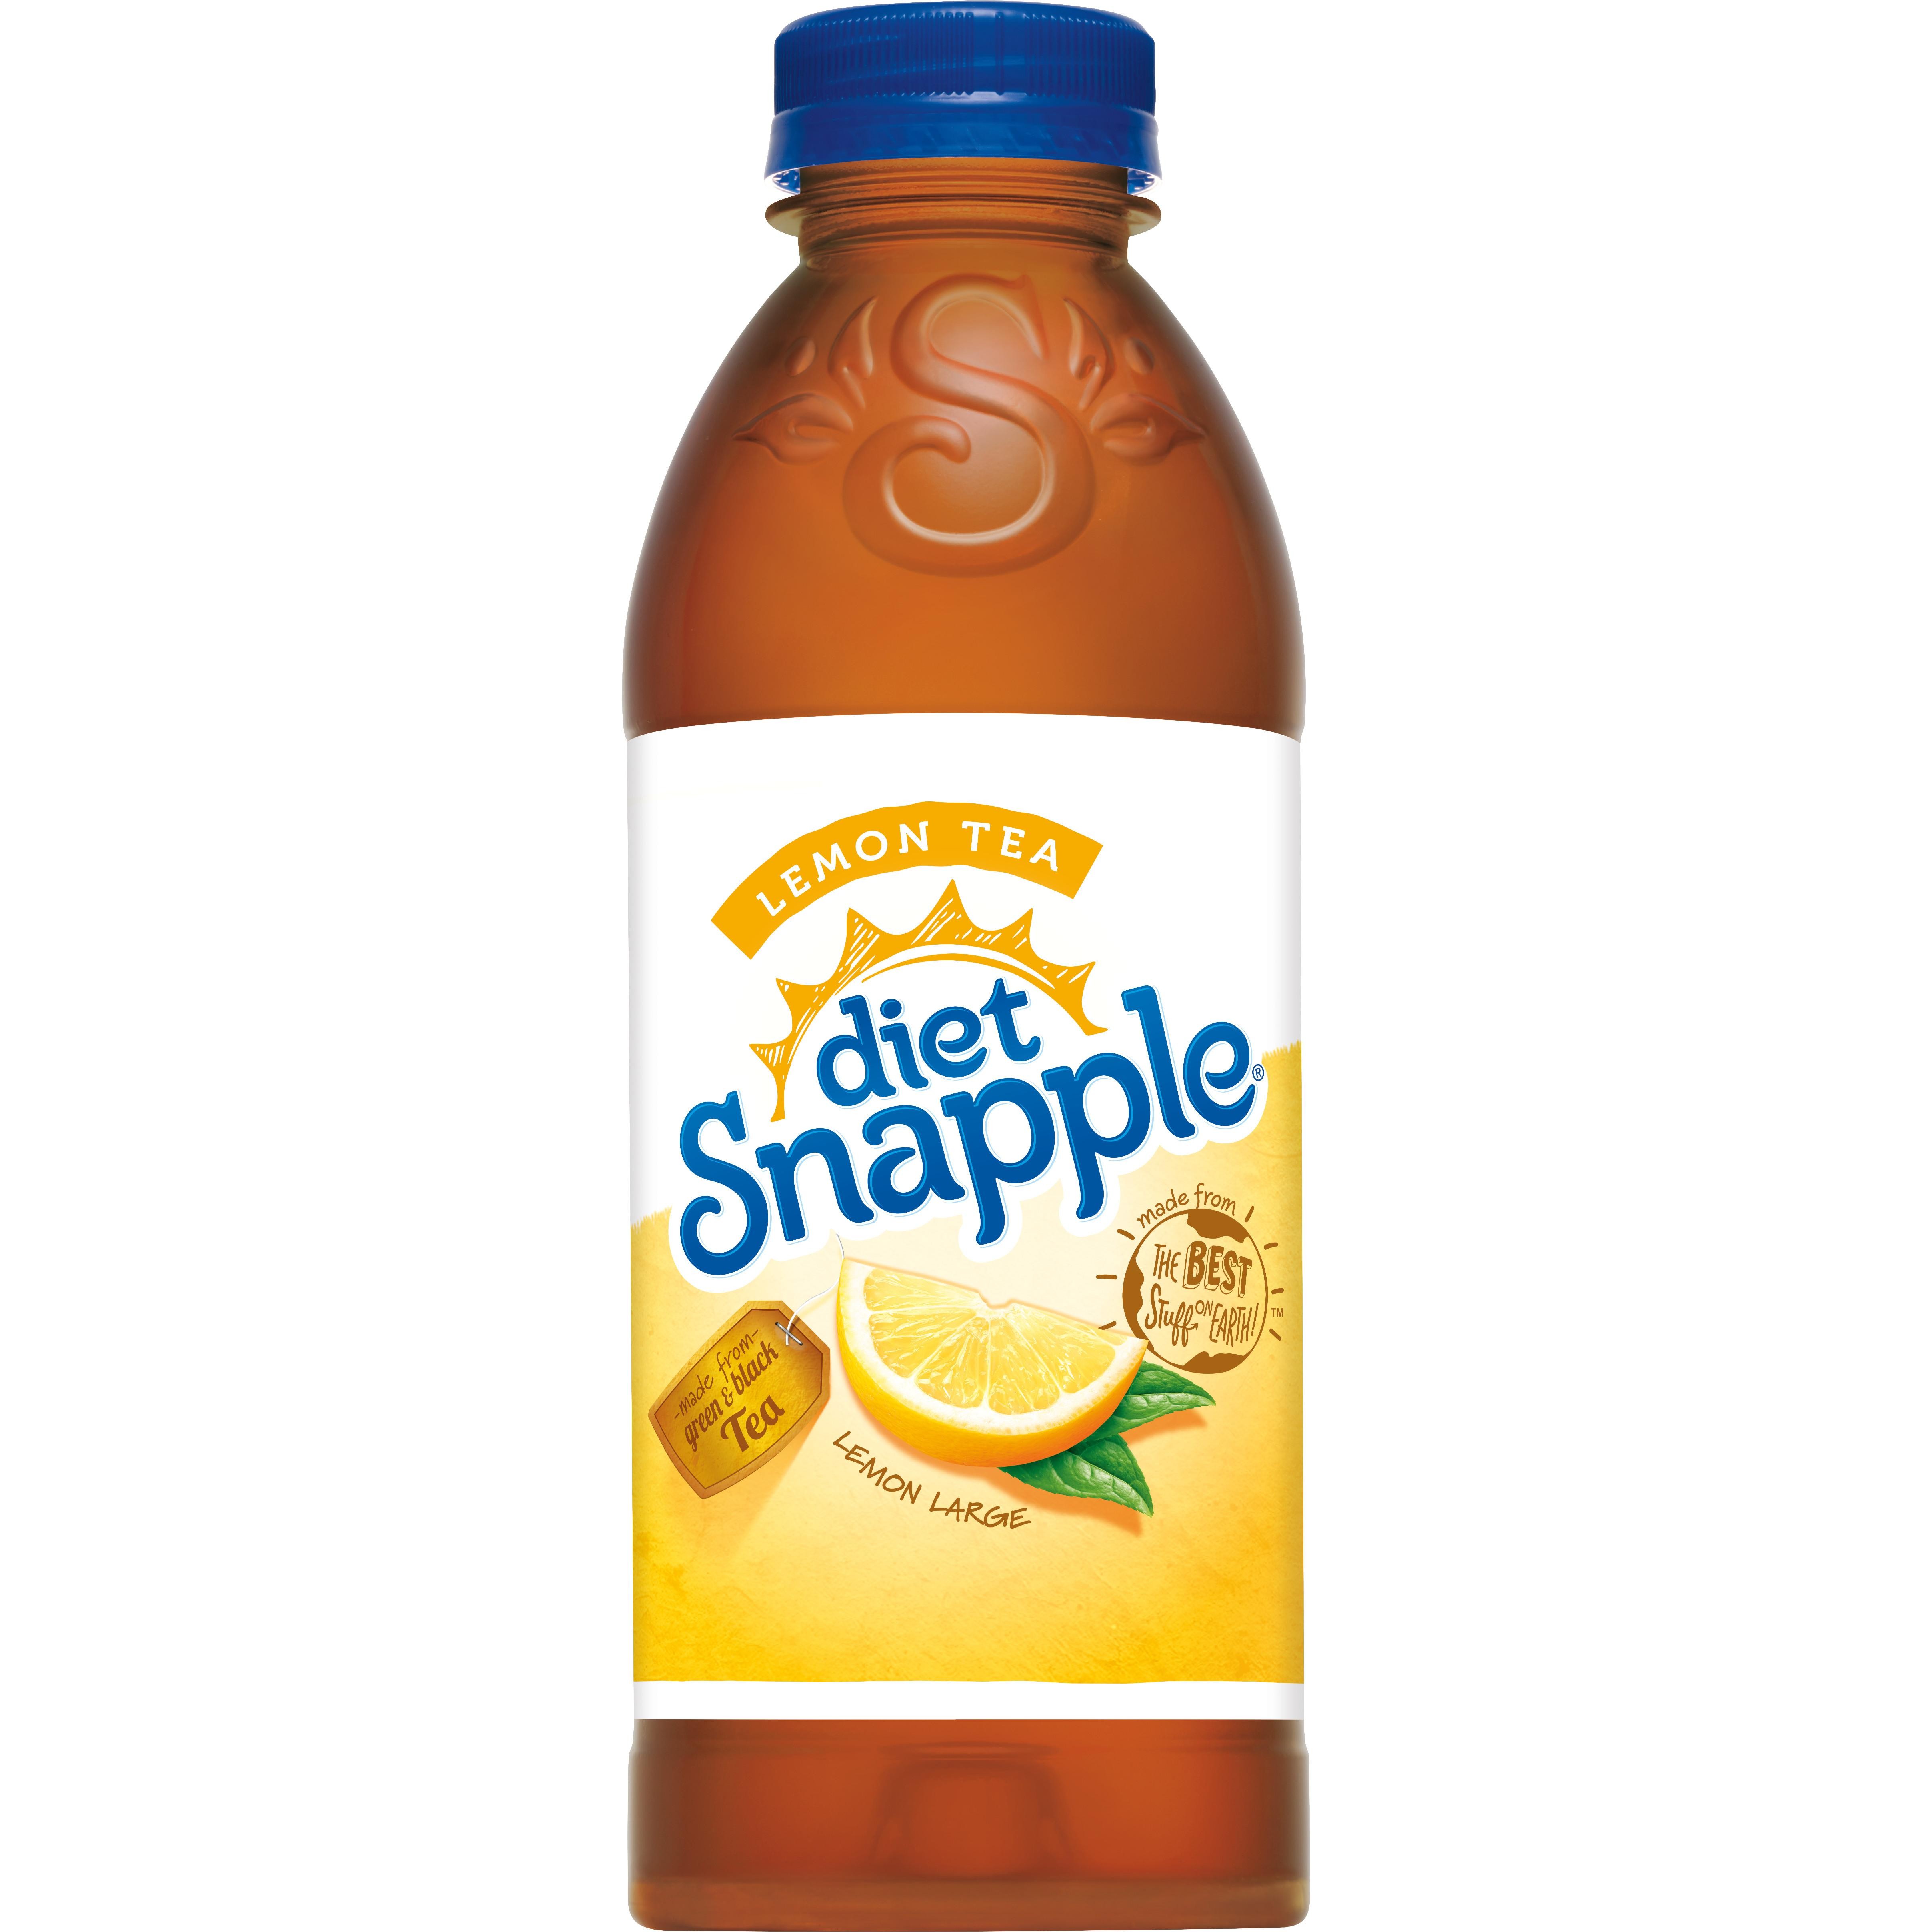 Diet Snapple Lemon Tea, 20 Fl. Oz.